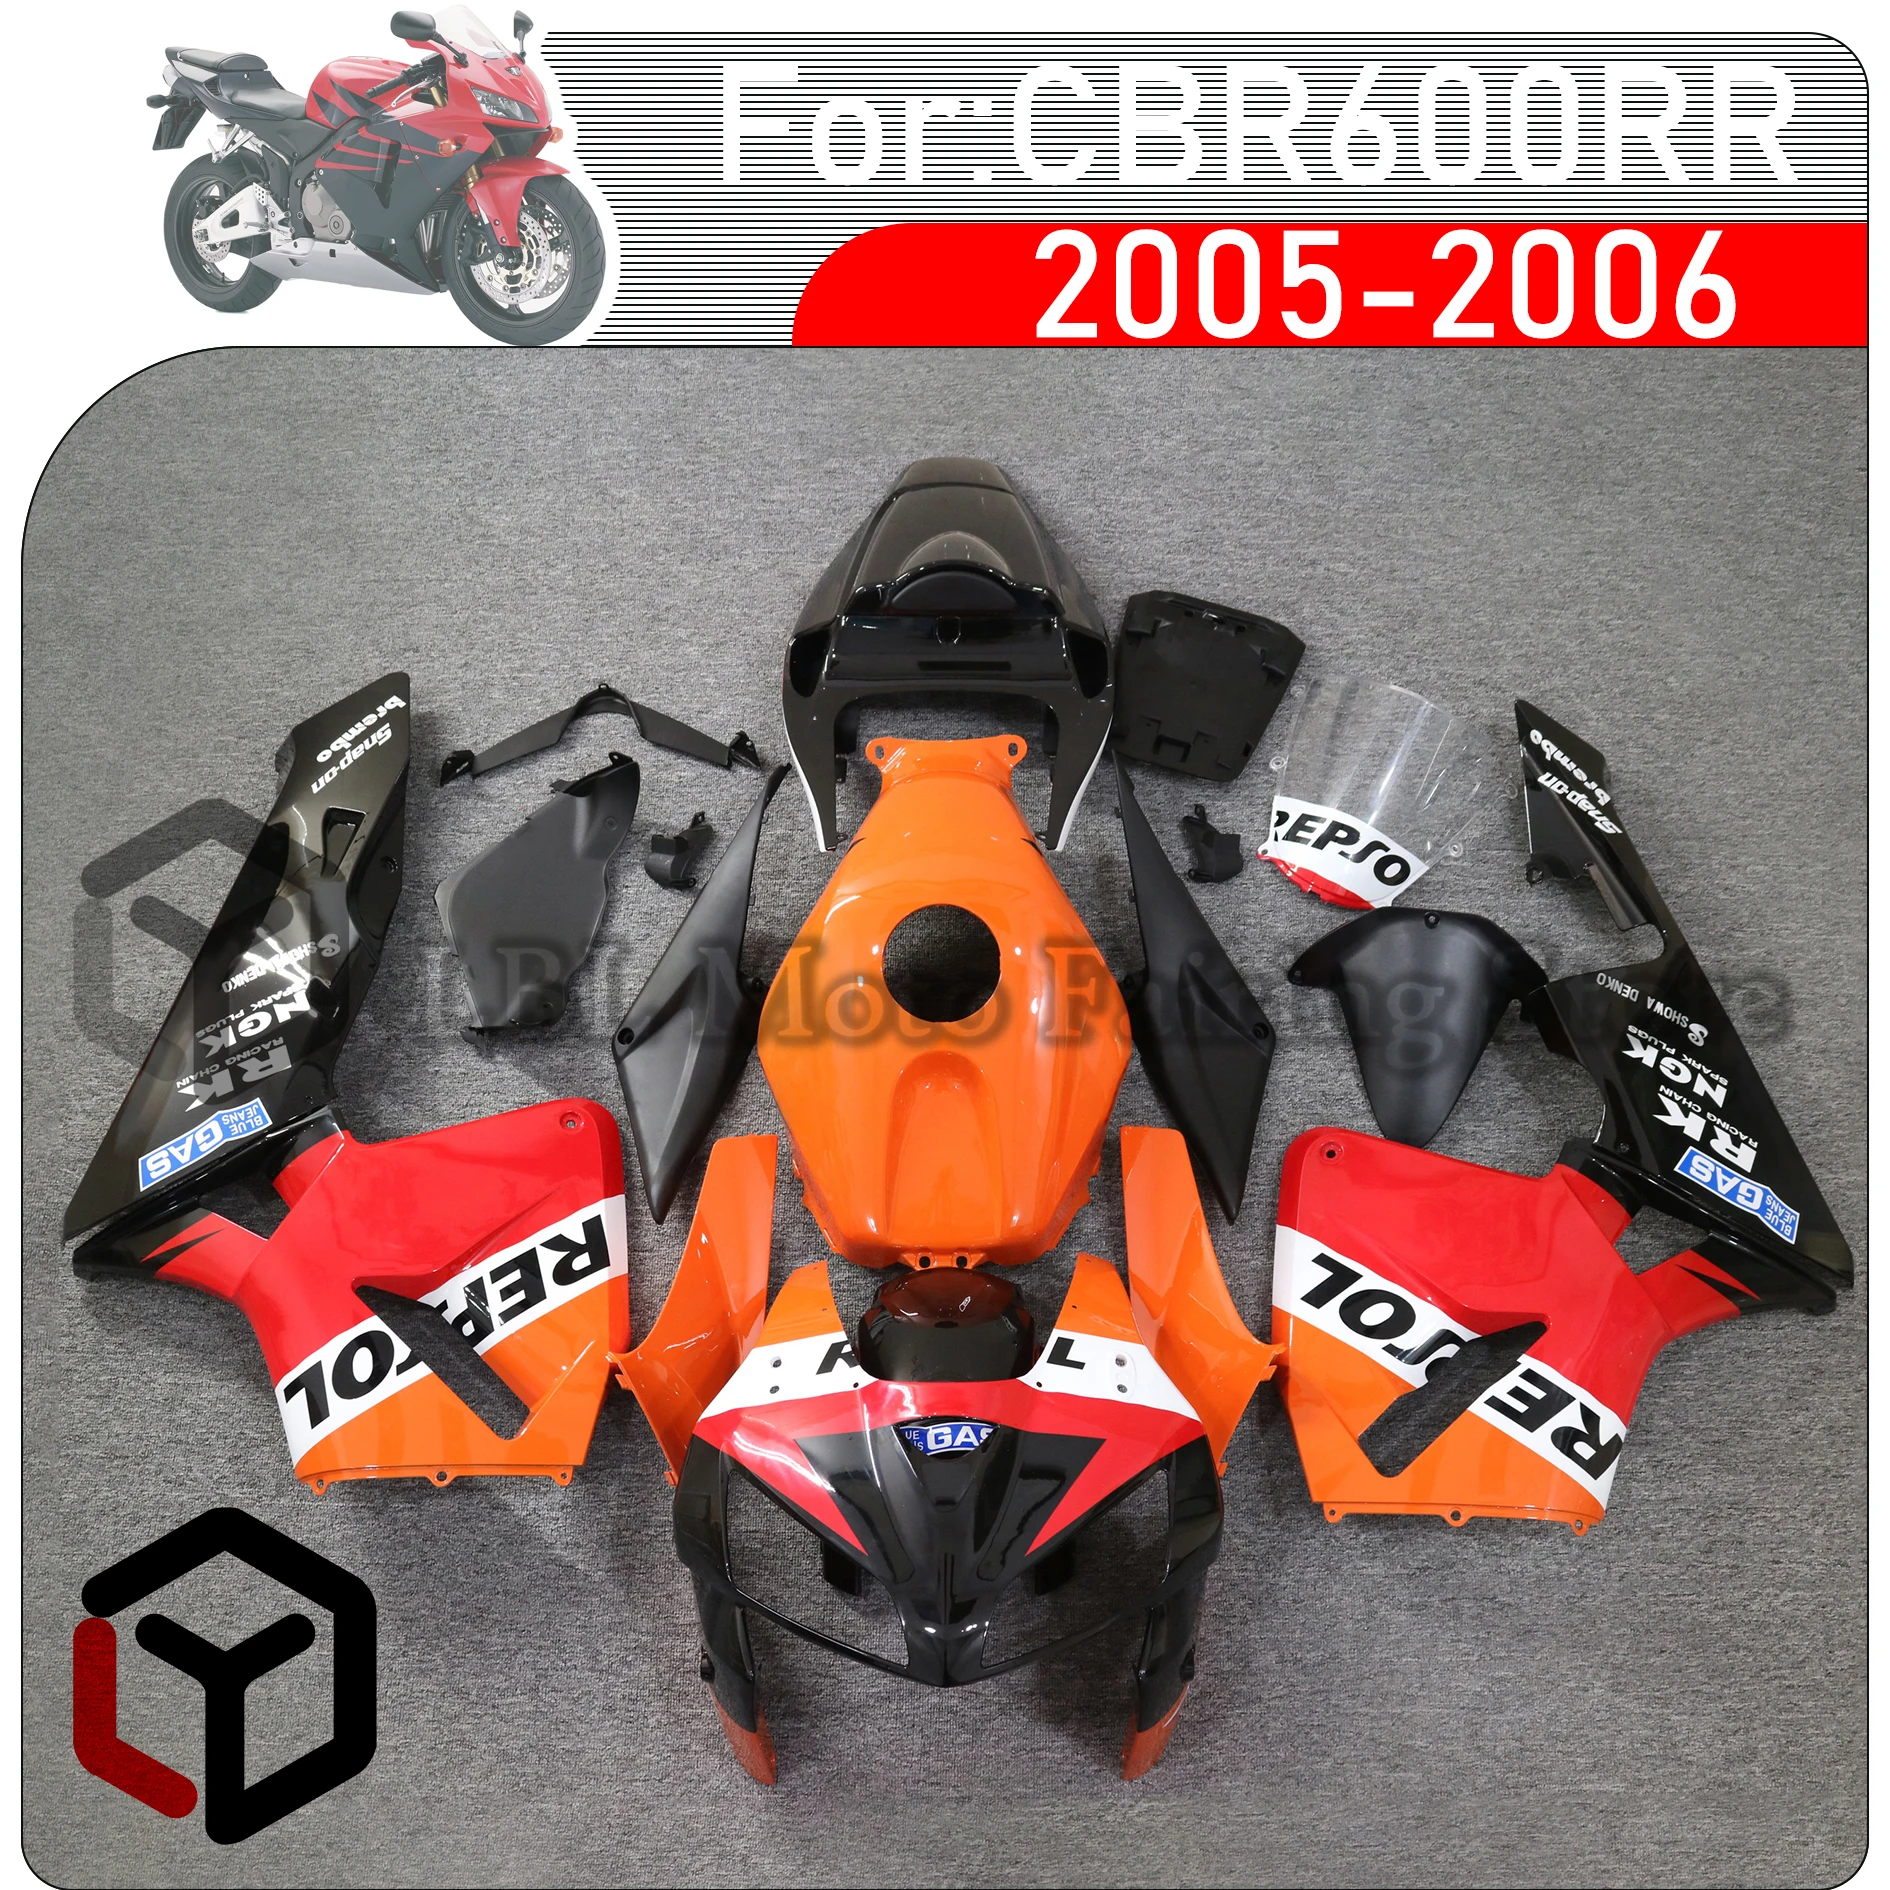 

Обтекатель для мотоцикла HONDA CBR600RR CBR 600RR CBR 600 RR F5 2005 2006, обтекатель для Honda CBR600rr 2005 2006